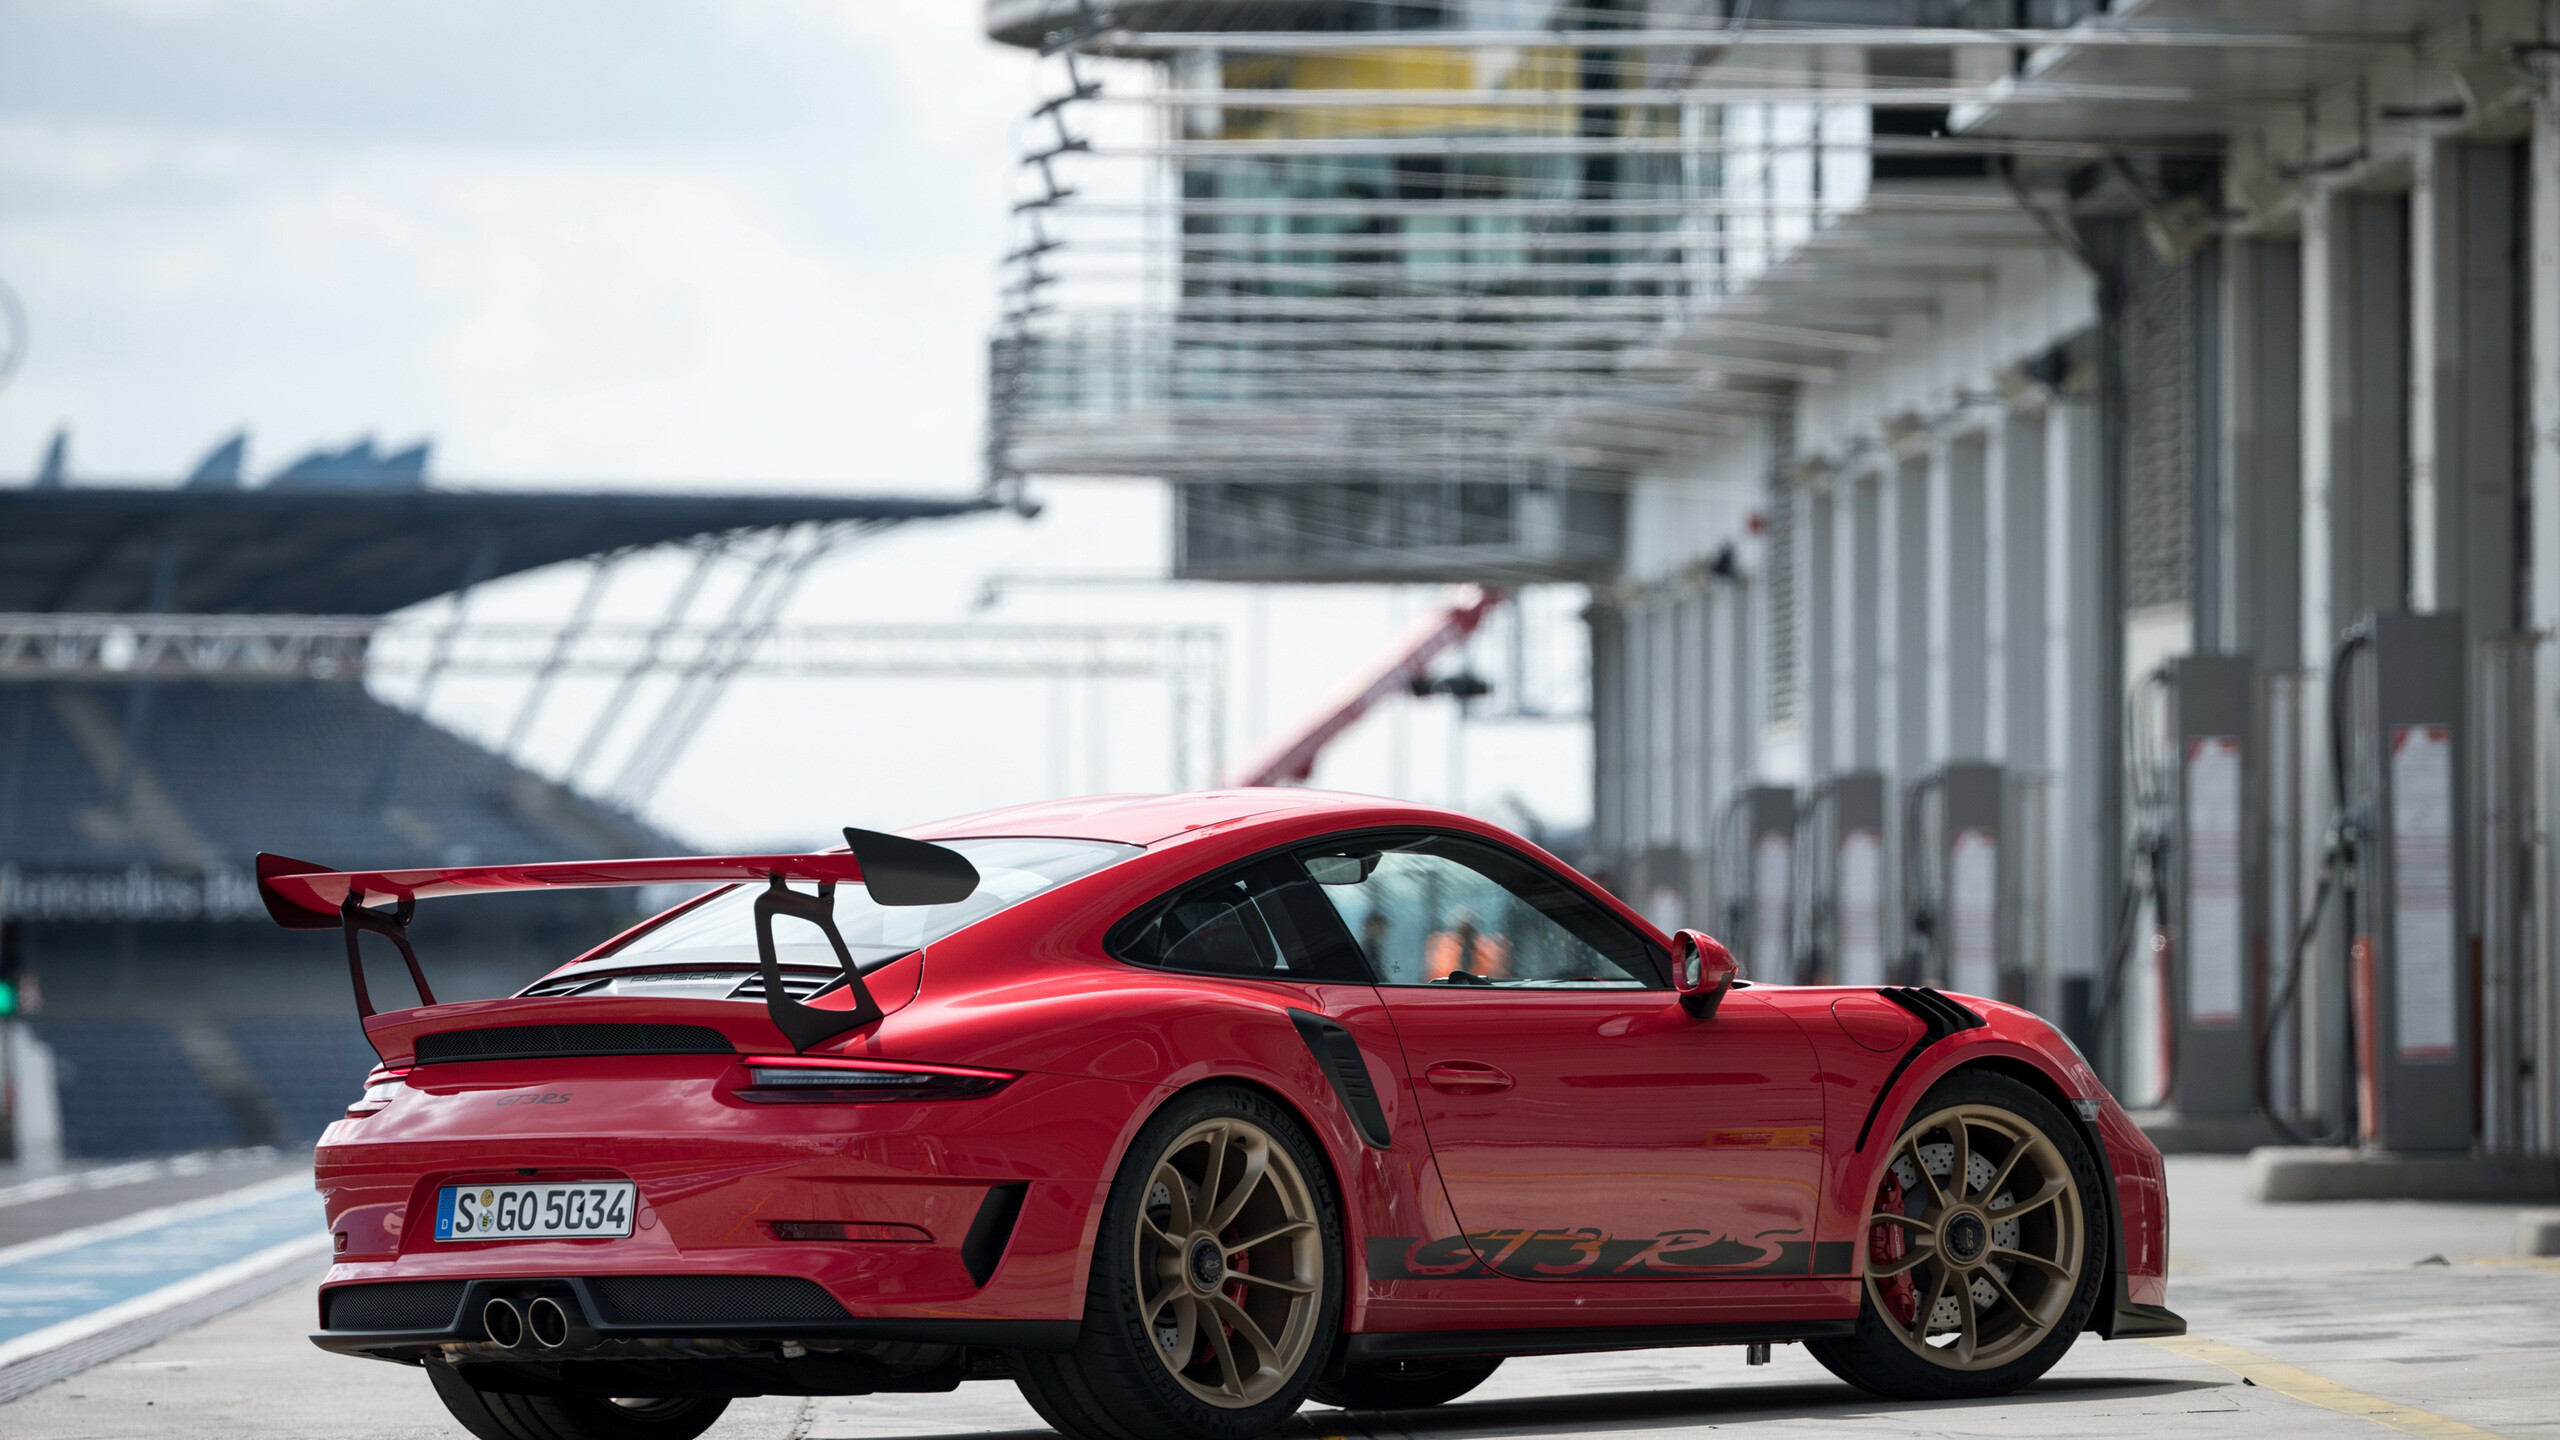 Porsche 911 GT3 RS, 4K resolution, High-definition wallpapers, Stunning photos, 2560x1440 HD Desktop